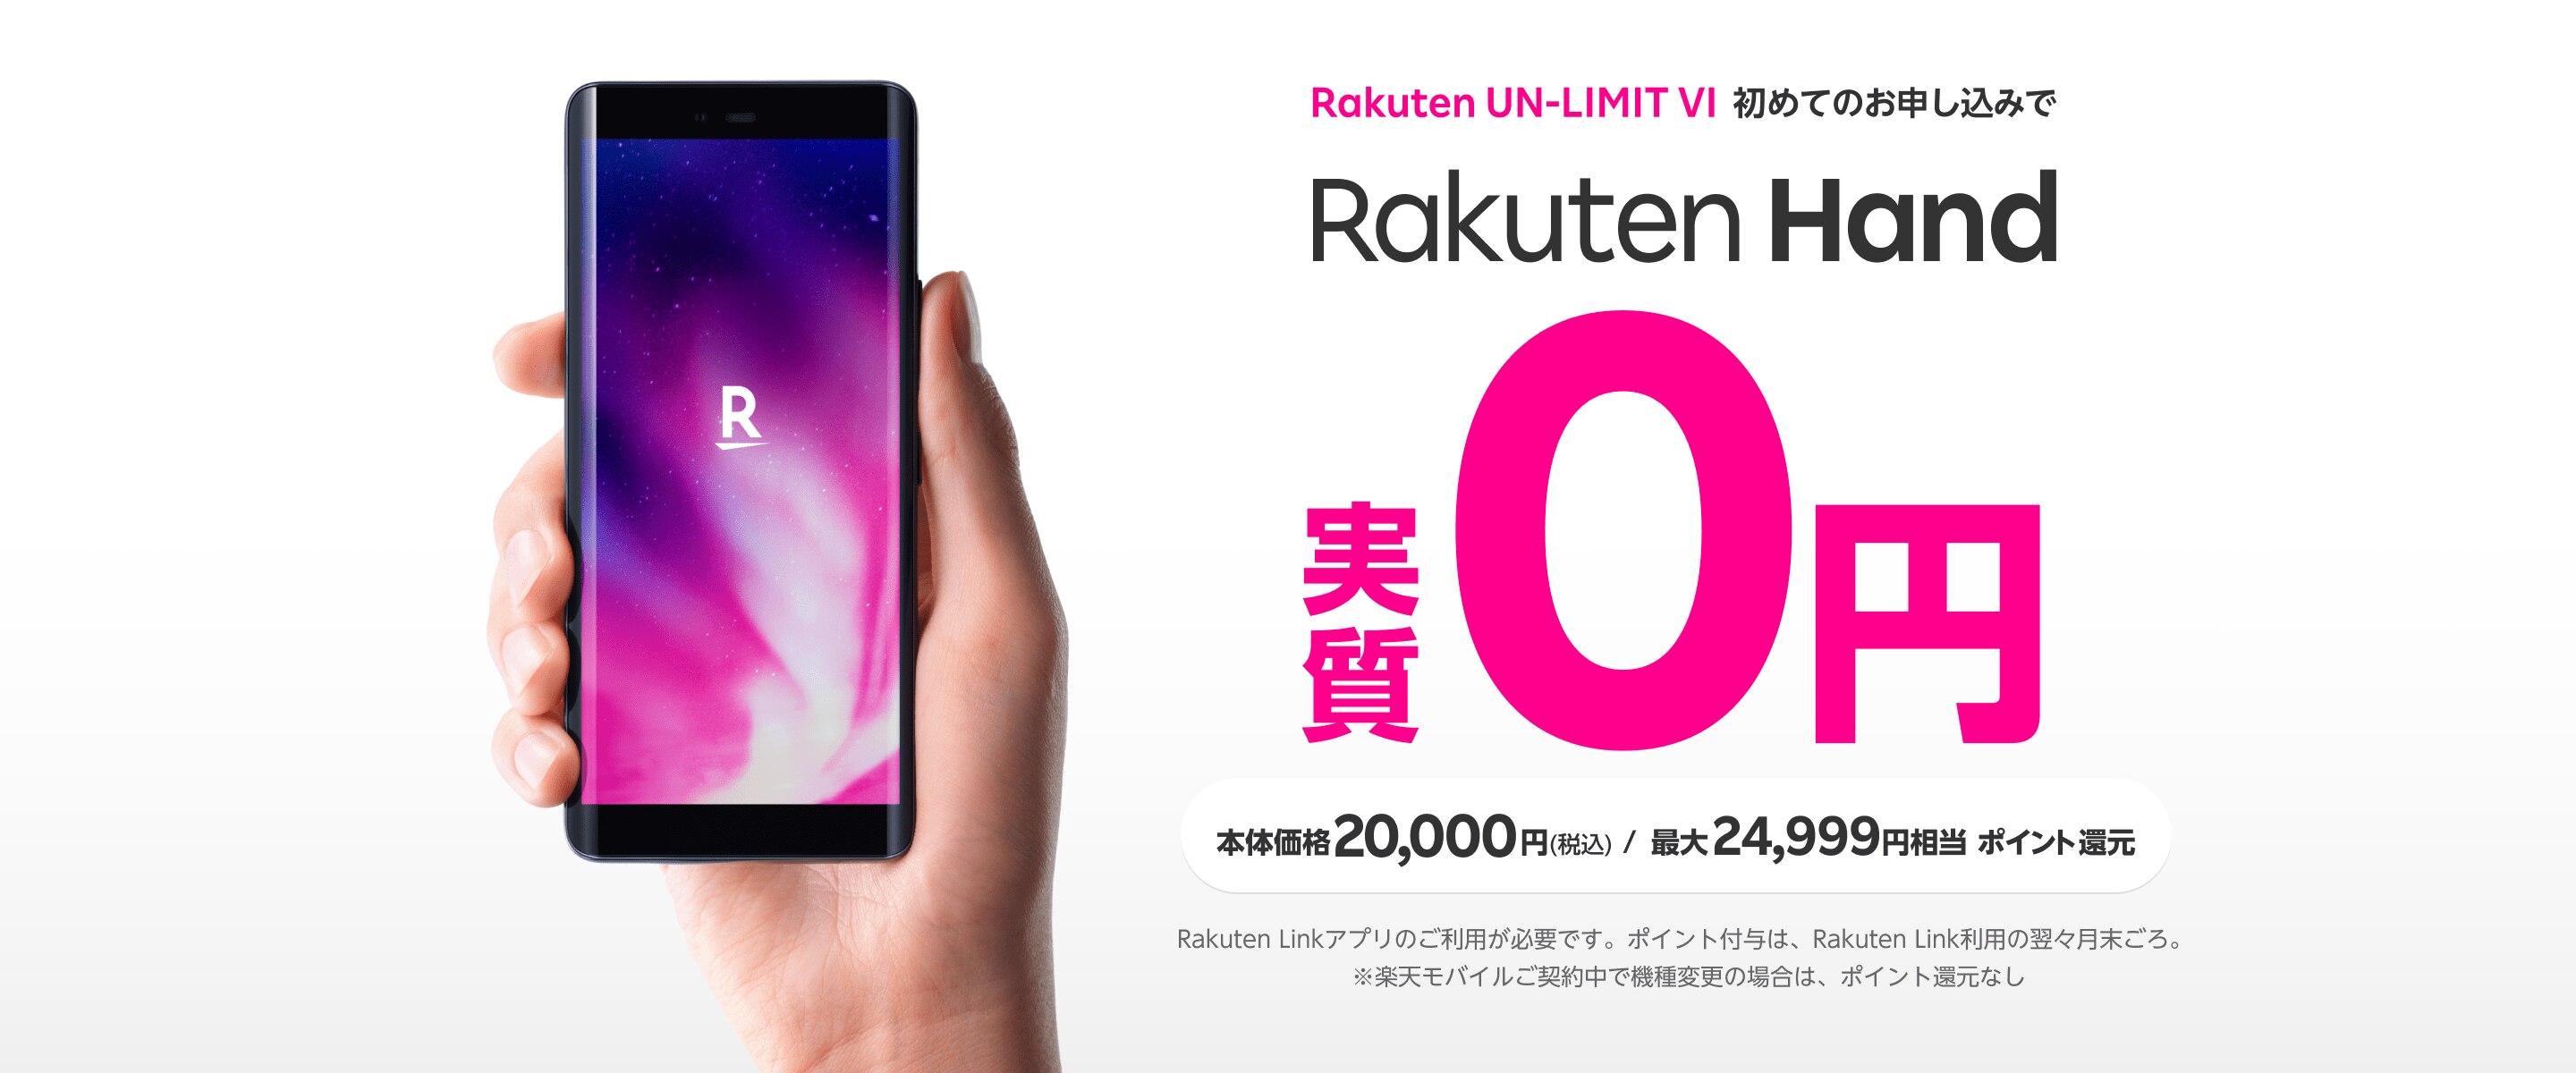 Rakuten Hand19,999ポイントプレゼントキャンペーン